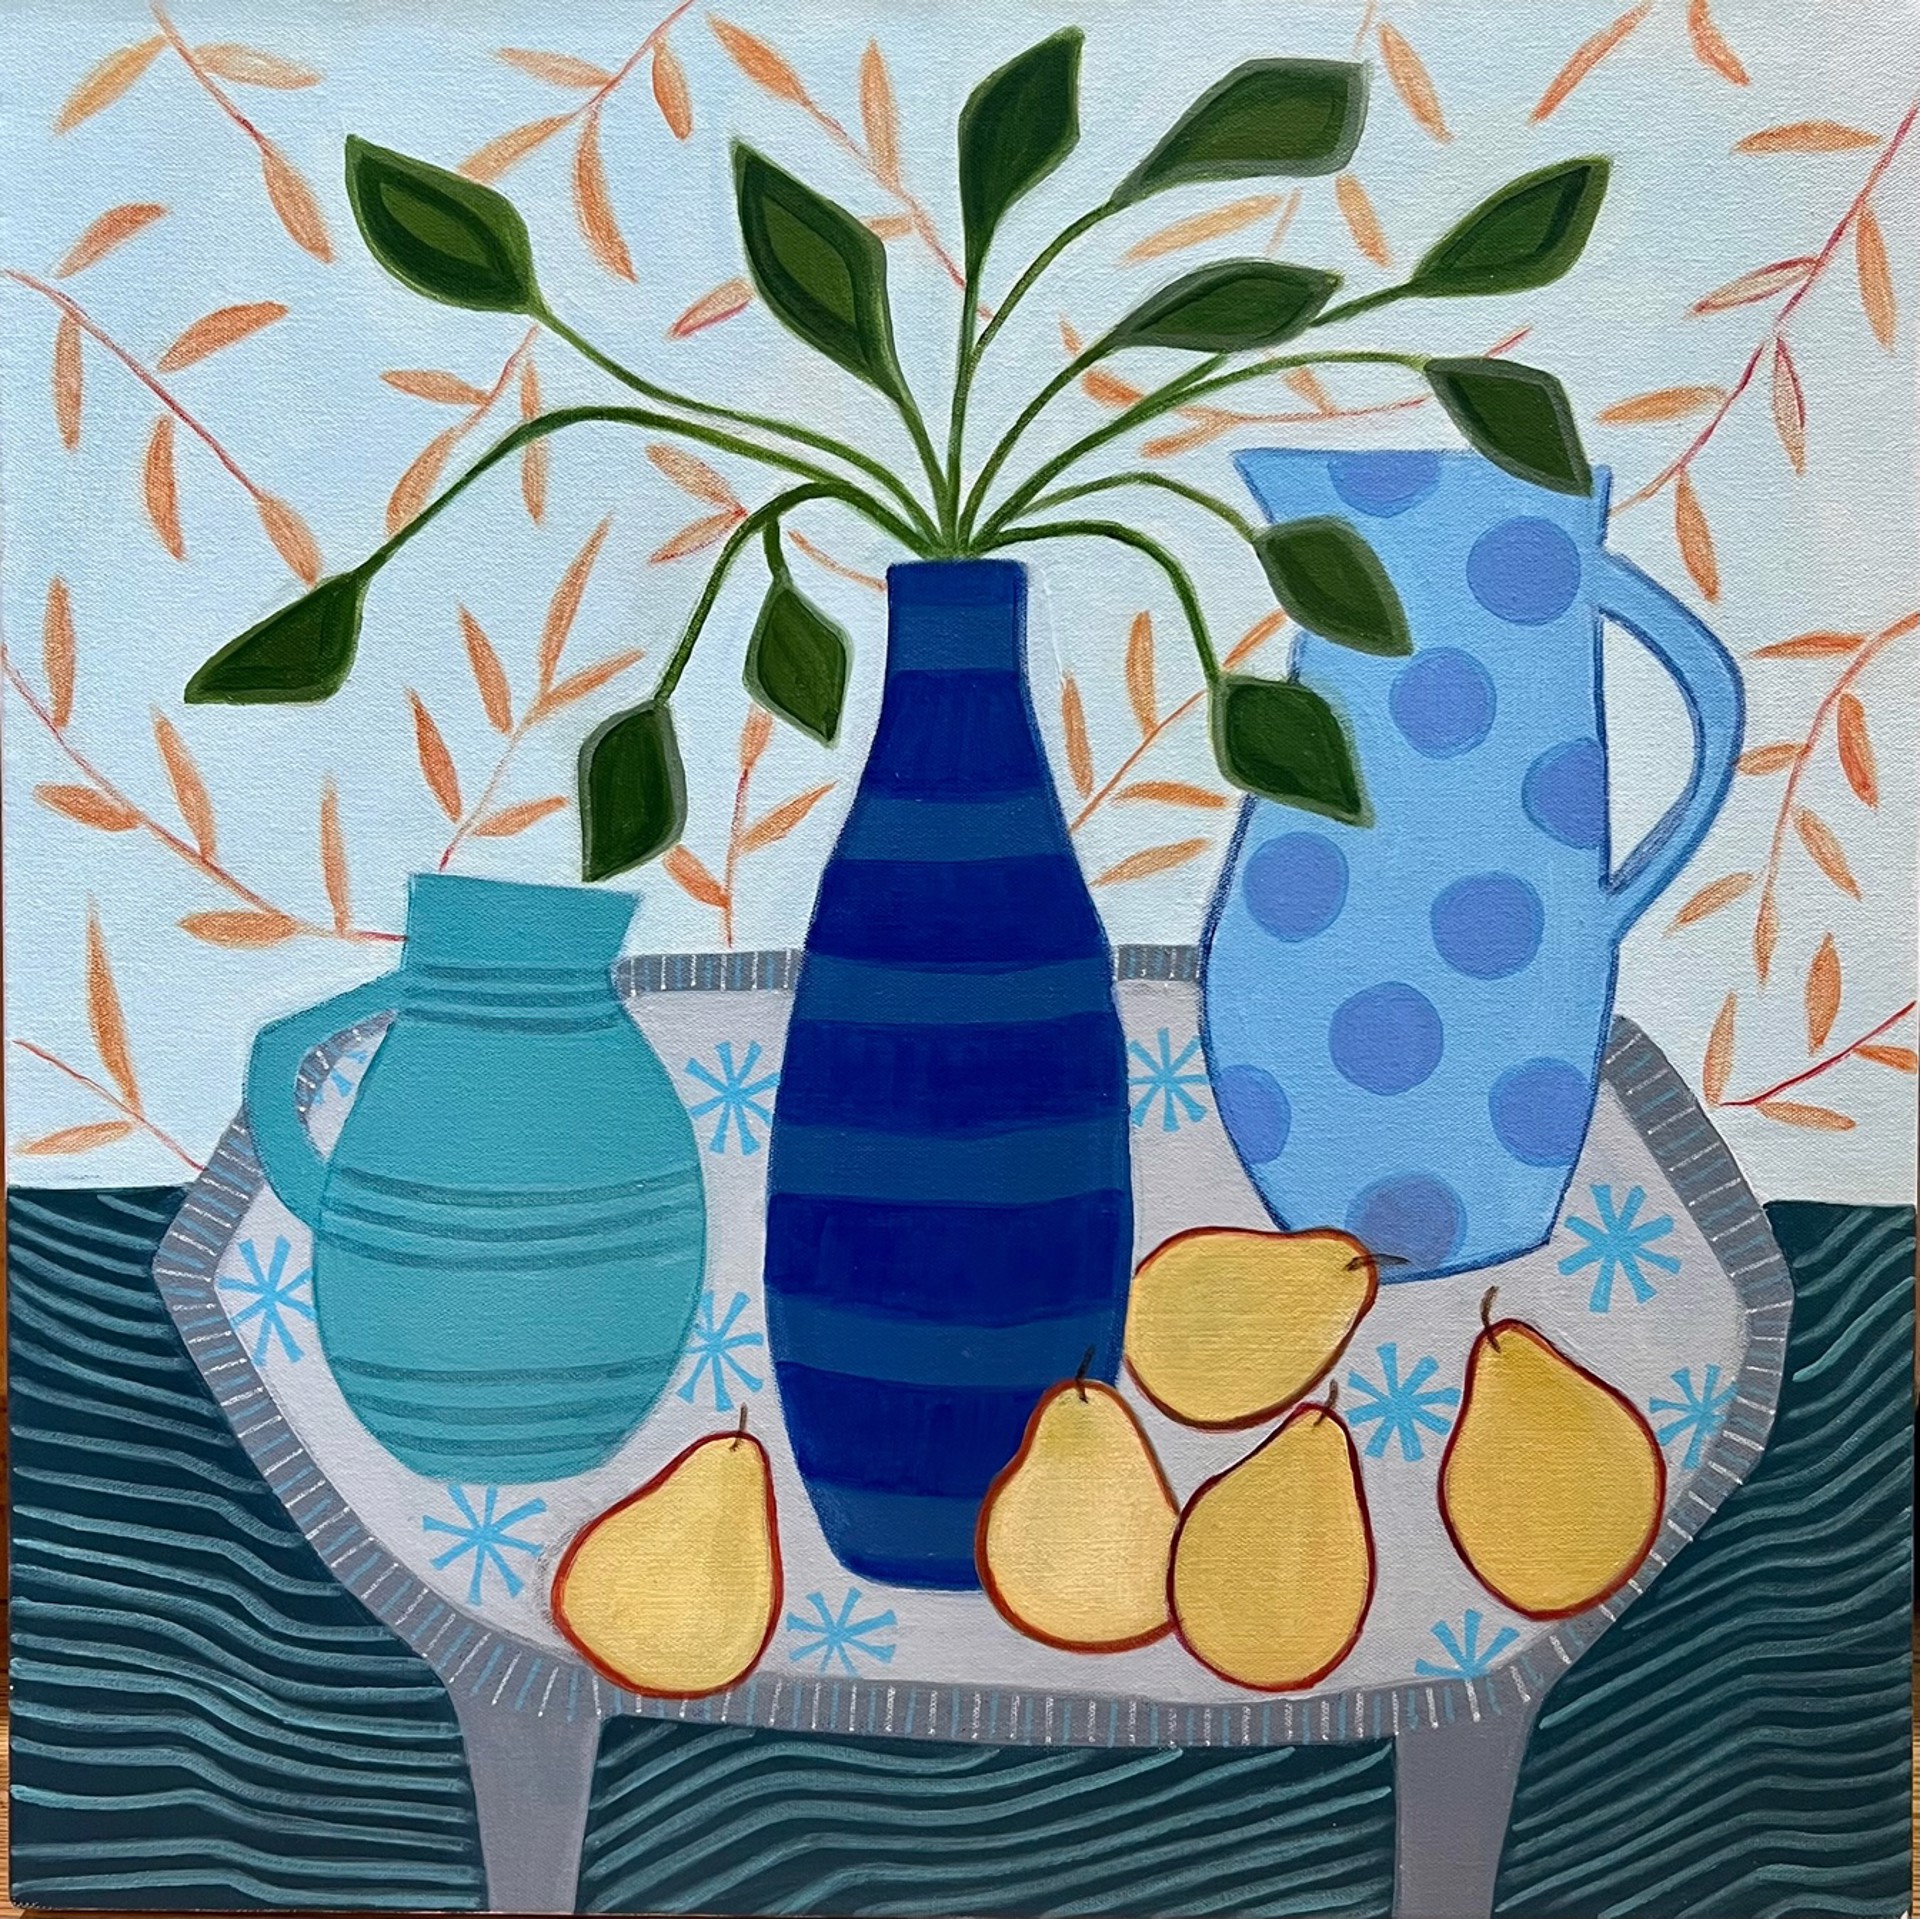 Five Golden Pears by Joyce Grasso